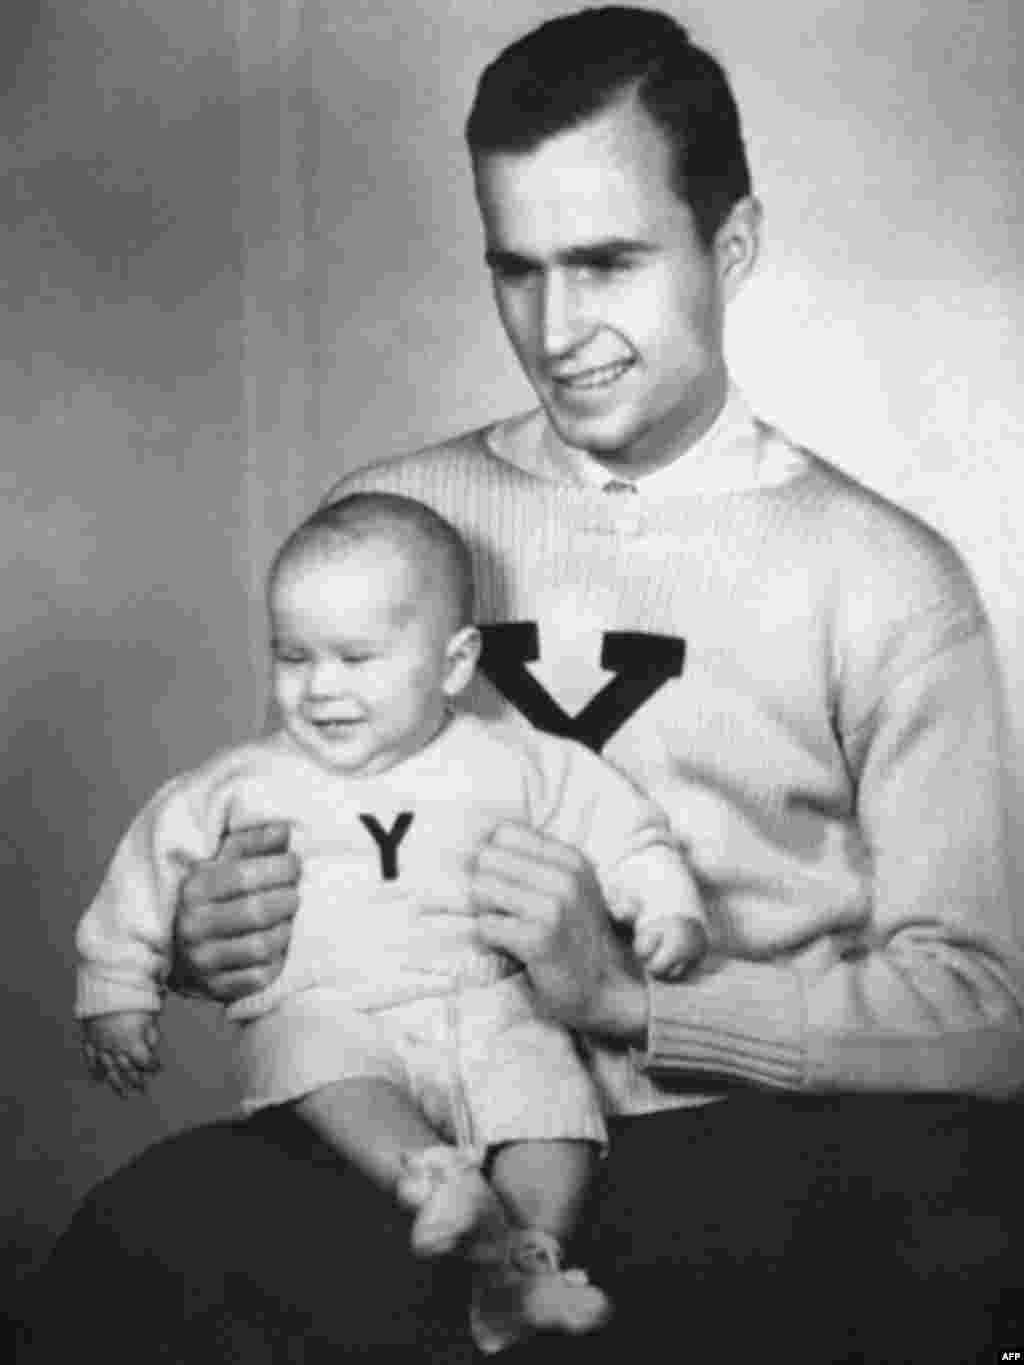 Майбутні президенти, батько і син - Майбутні президенти США: Джордж Буш (батько) та Джордж Буш (син) у светрах Йельського університету. 1946 рік, Нью Гевен, штат Конектикут.